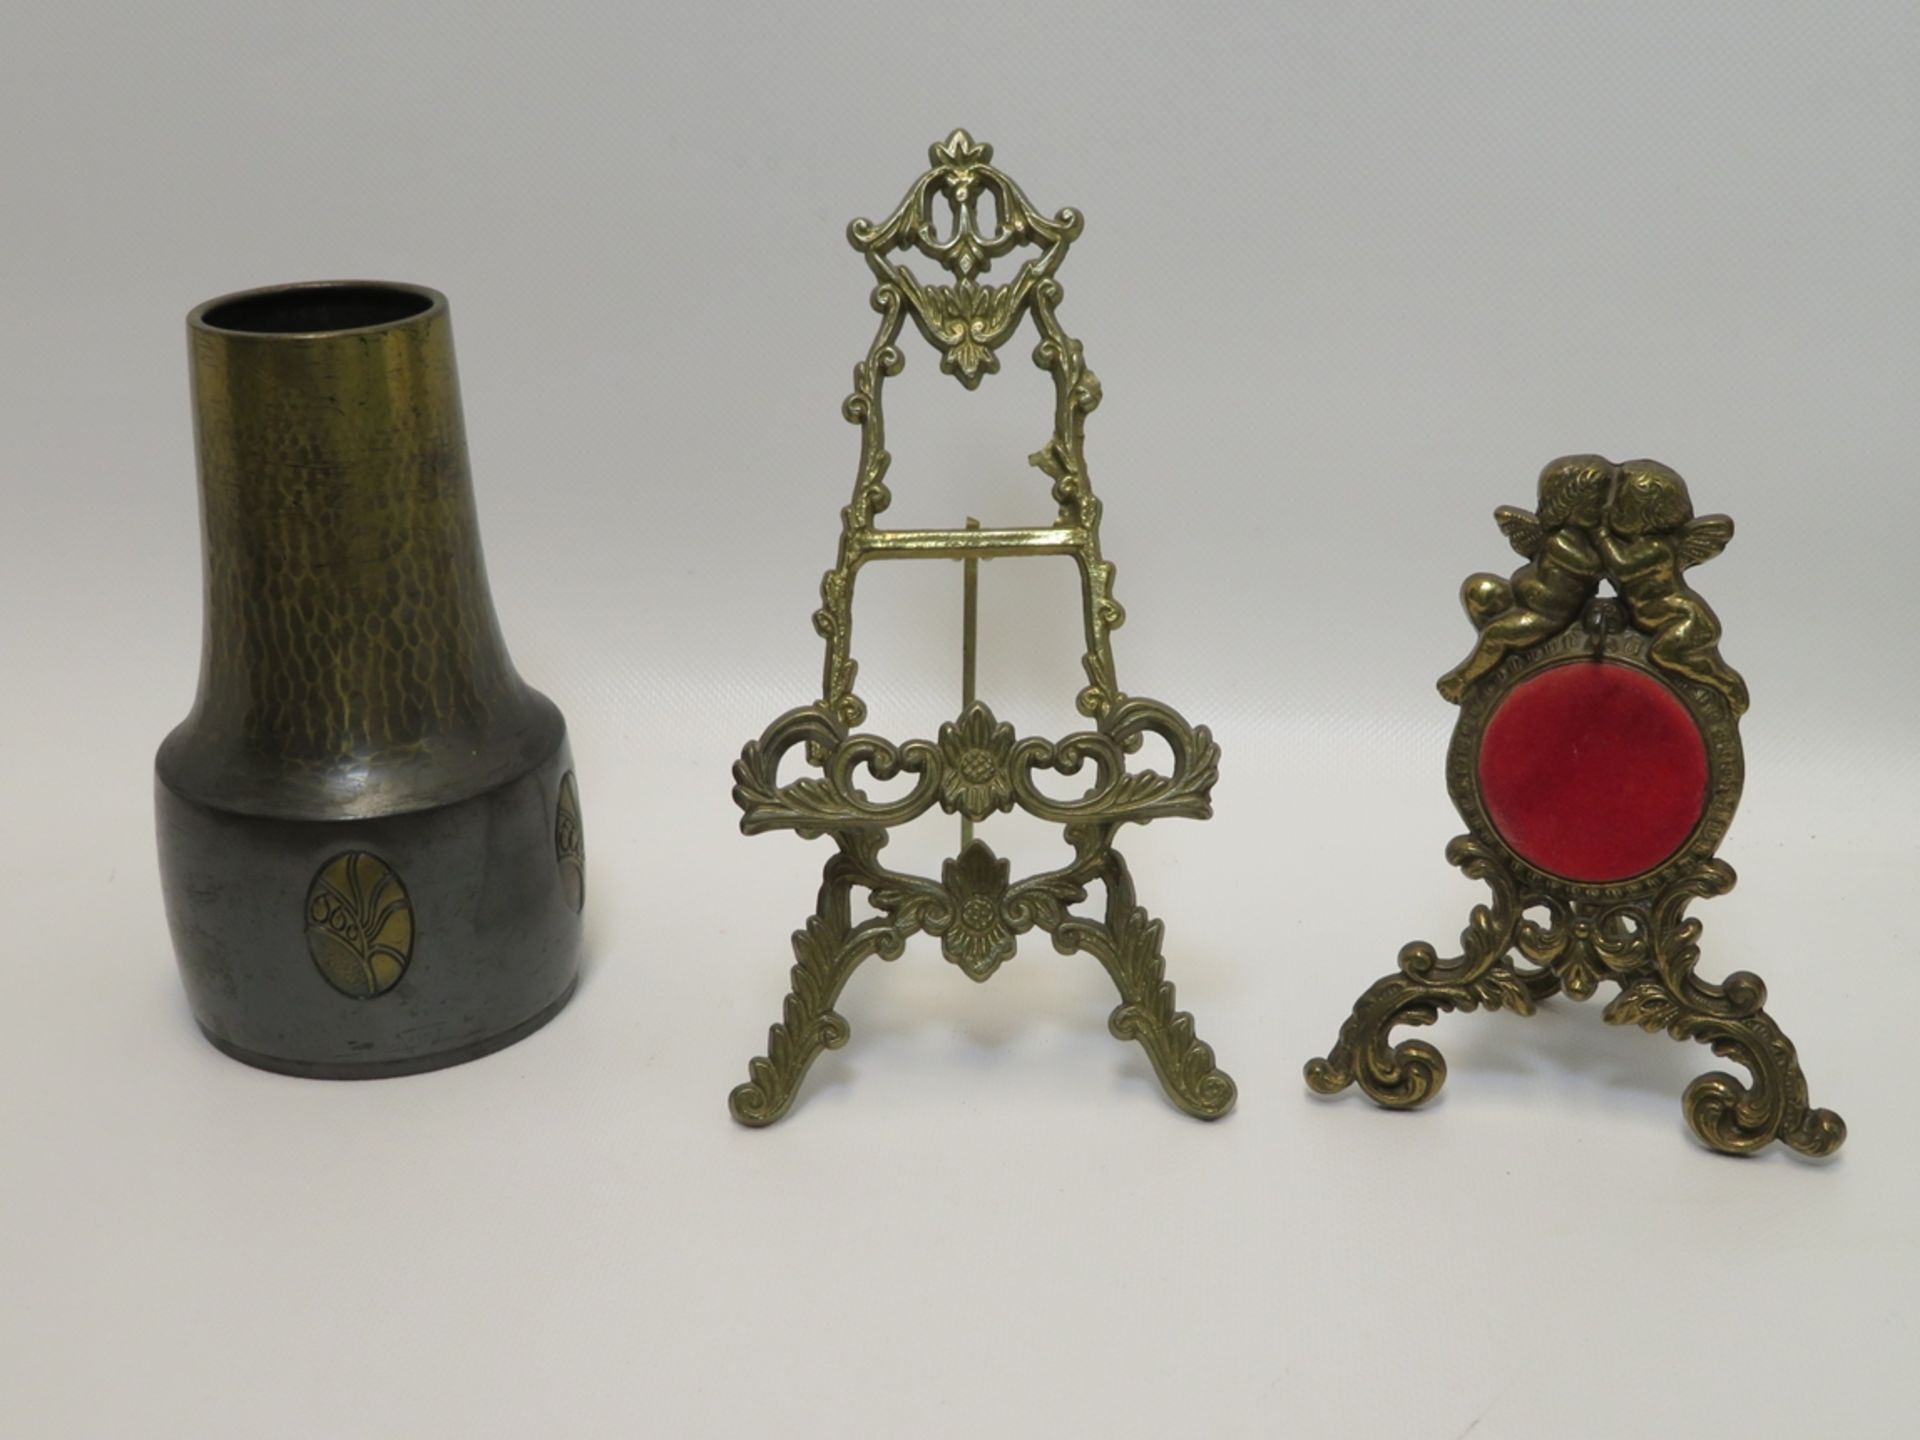 3 teiliges Konvolut, bestehend aus kleiner Staffelei, Uhrenständer und Vase.